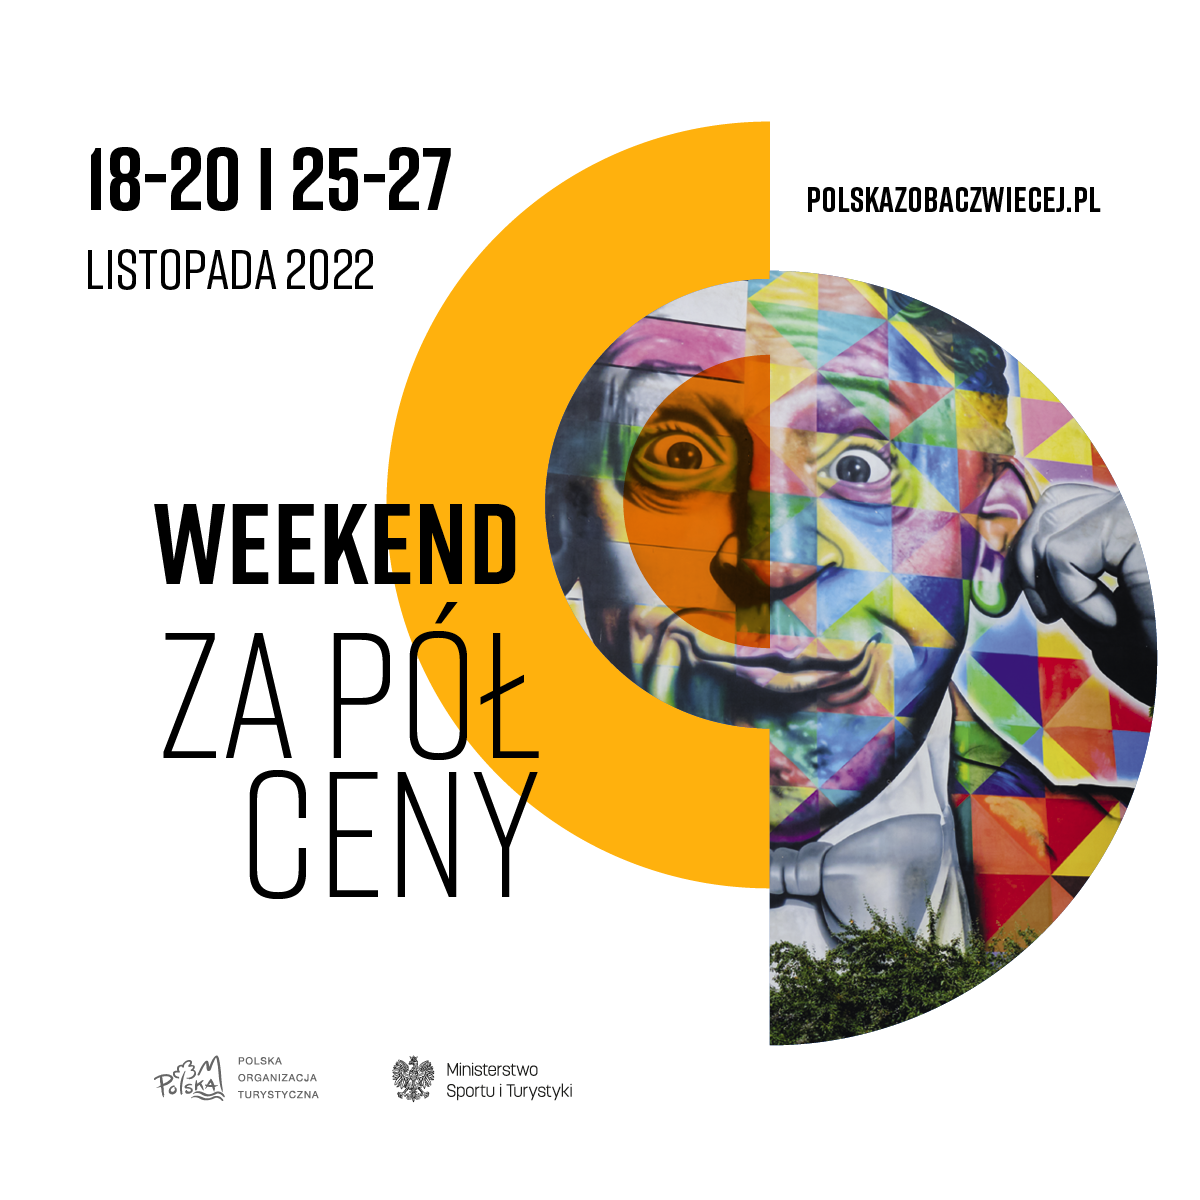 Polska zobacz więcej – Weekend za pół ceny